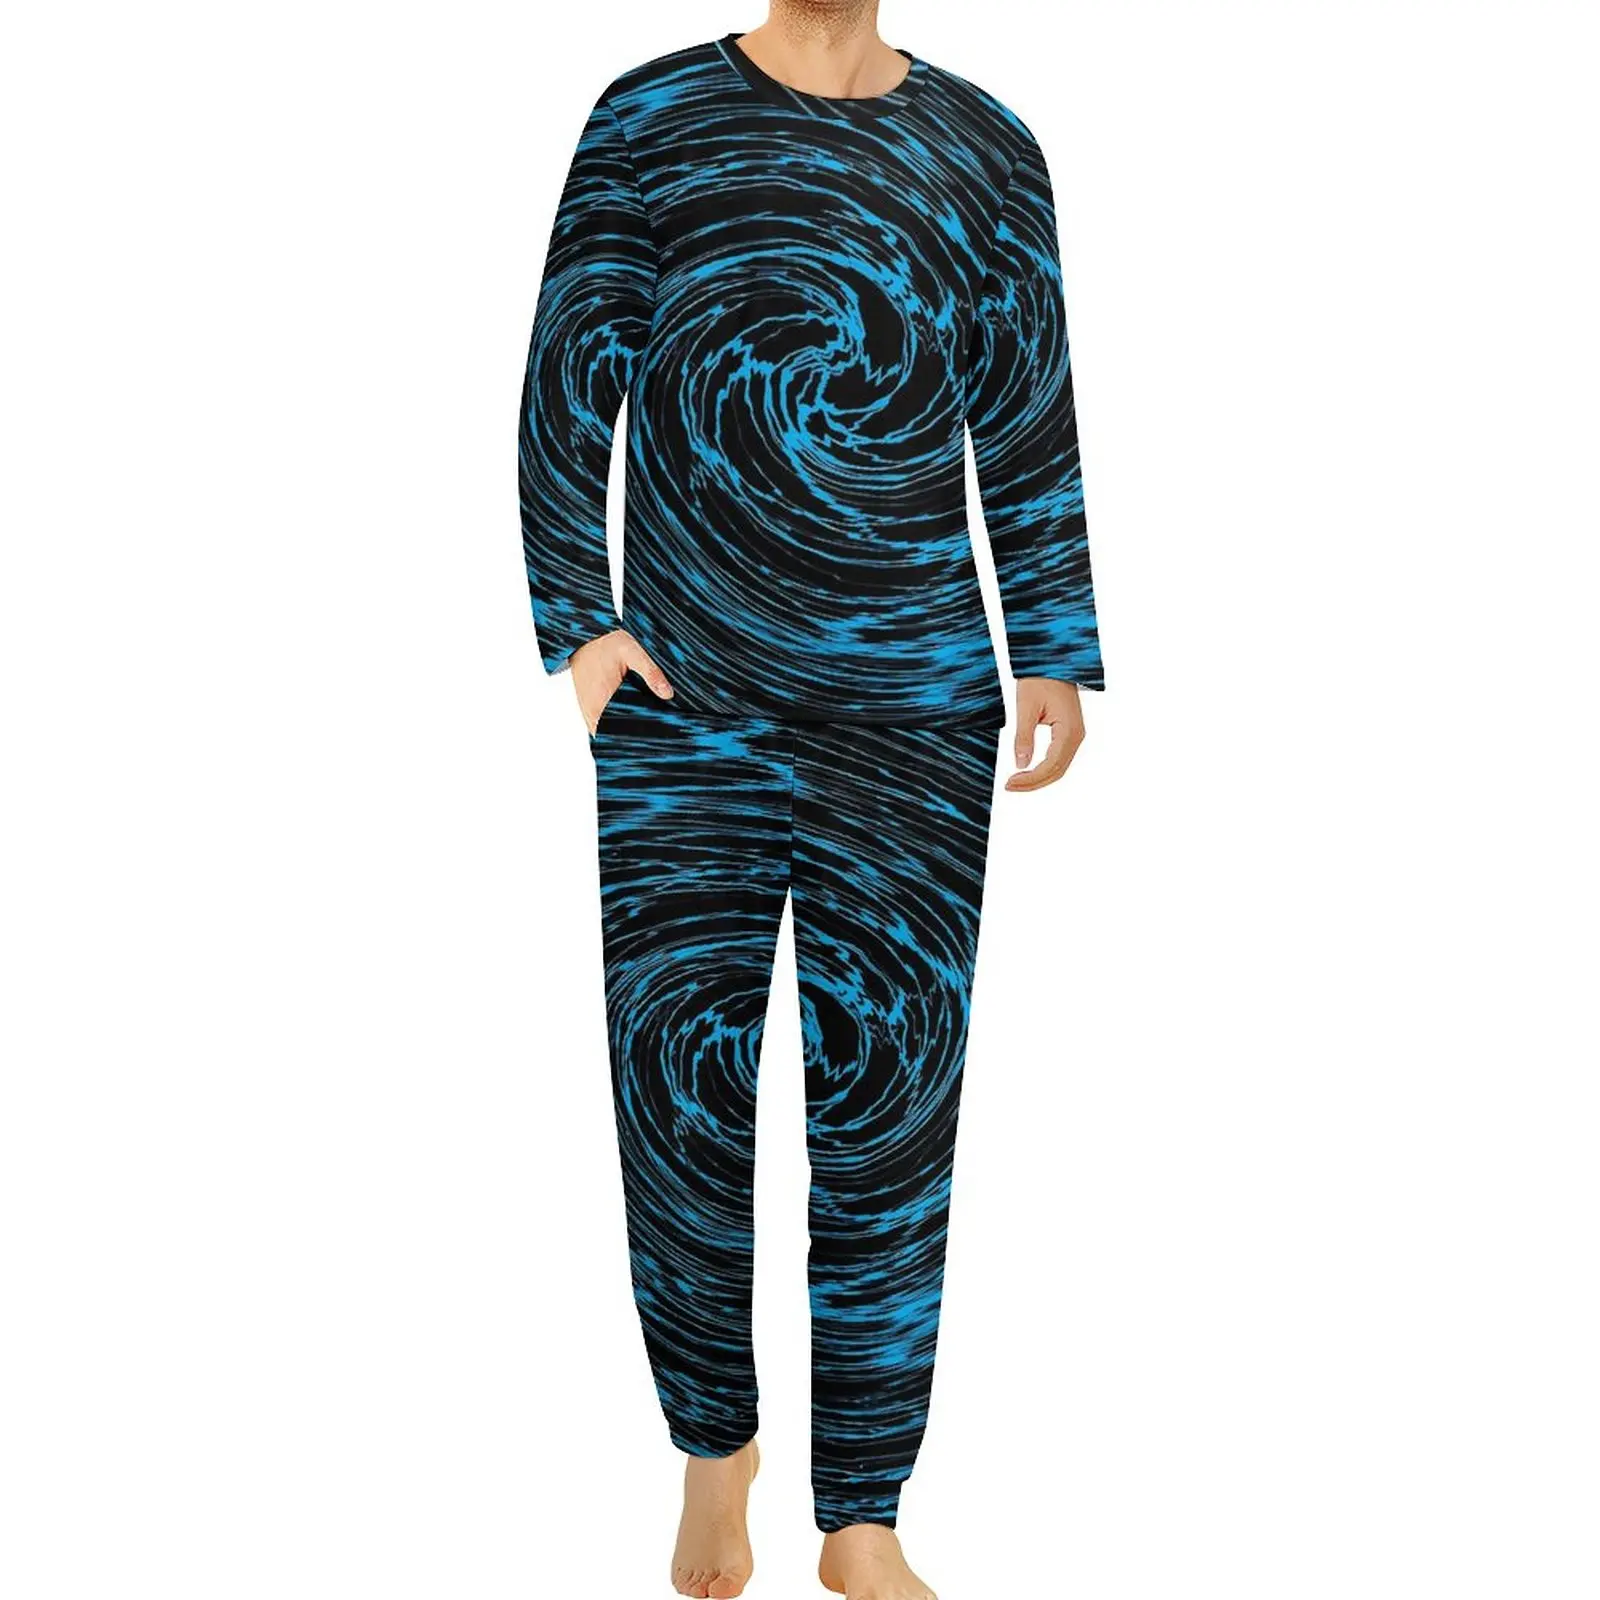 

Пижама на мелкой воде с синим вихревым принтом, милый пижамный комплект с длинным рукавом, 2 предмета, спальная одежда для сна в спальню, весенний дизайн, подарок на день рождения